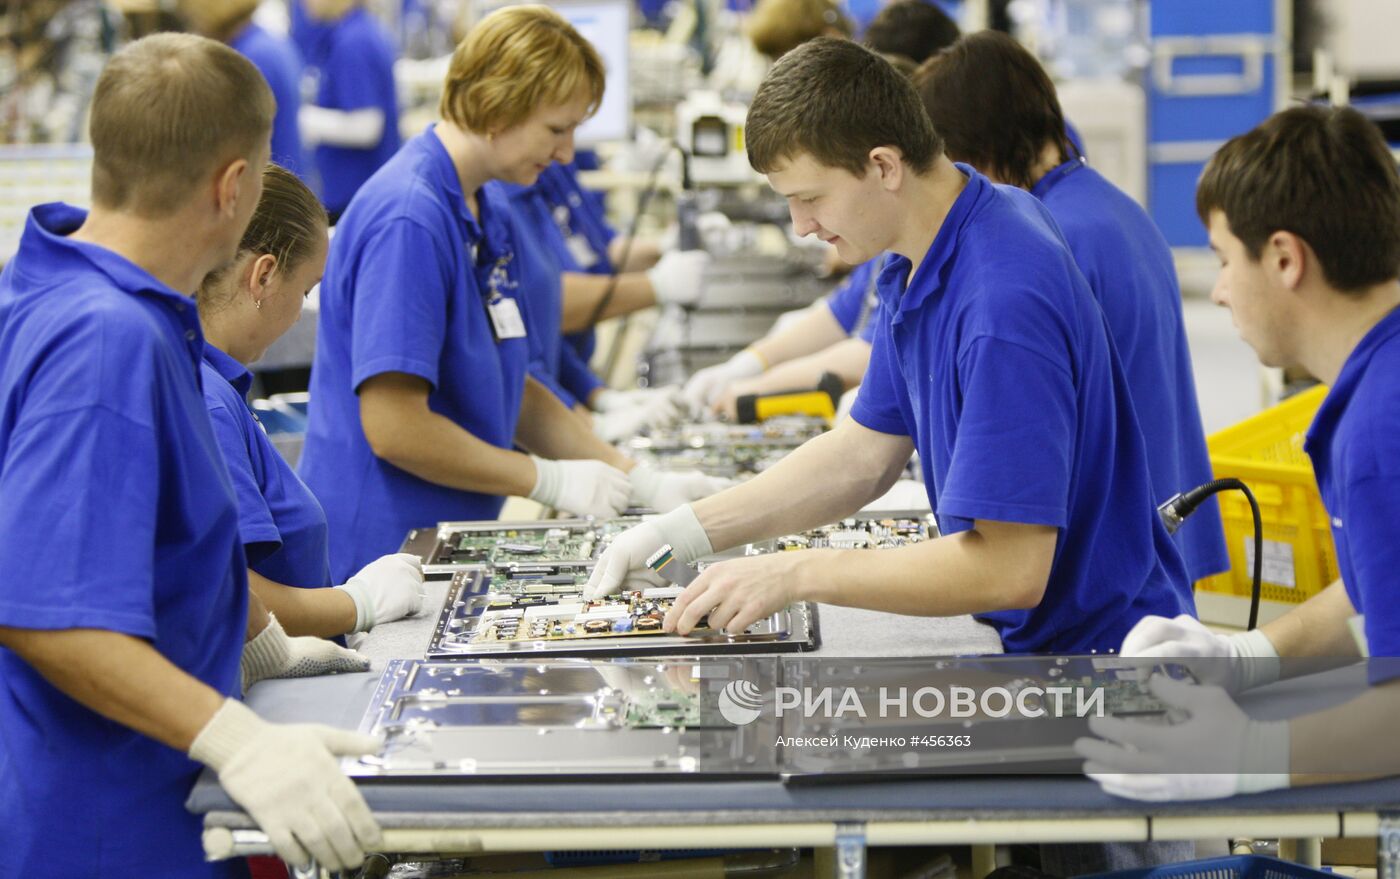 Работа завода компании Samsung Electronics в Калужской области